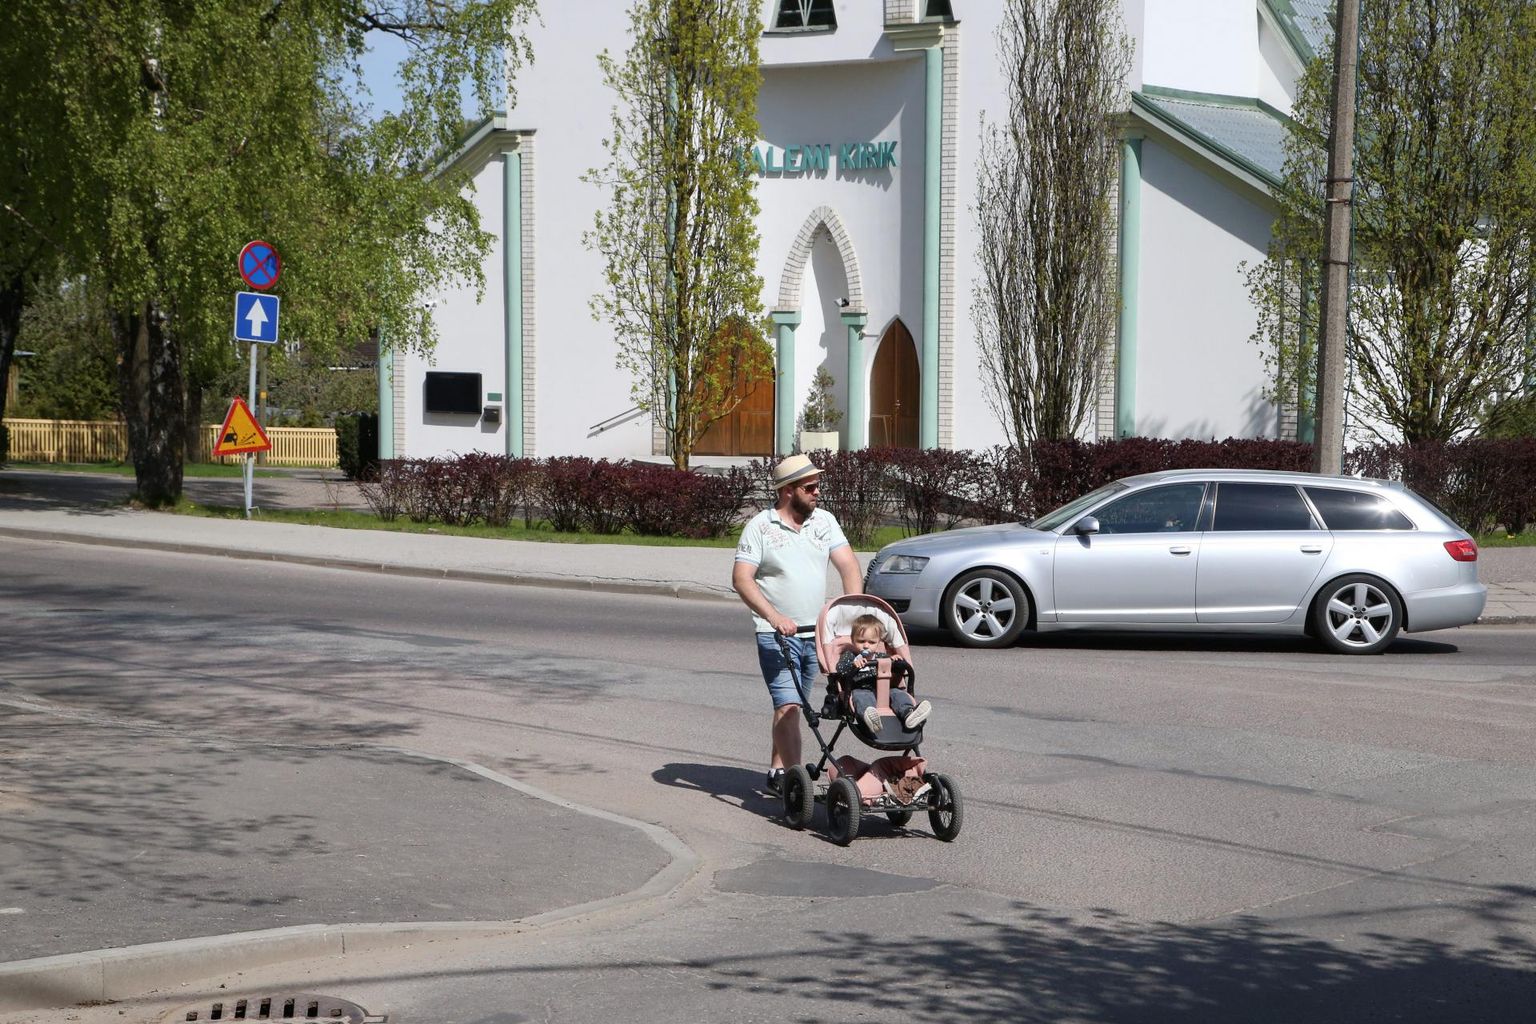 Teisipäeval Salemi kiriku ees Kalevi tänavat lapsekäruga ületanud Tauri Bergmani üle tee lubamiseks tuli Audi juhil pöördel pidurdada ja seisma jääda, kuigi seal vöötrada pole.